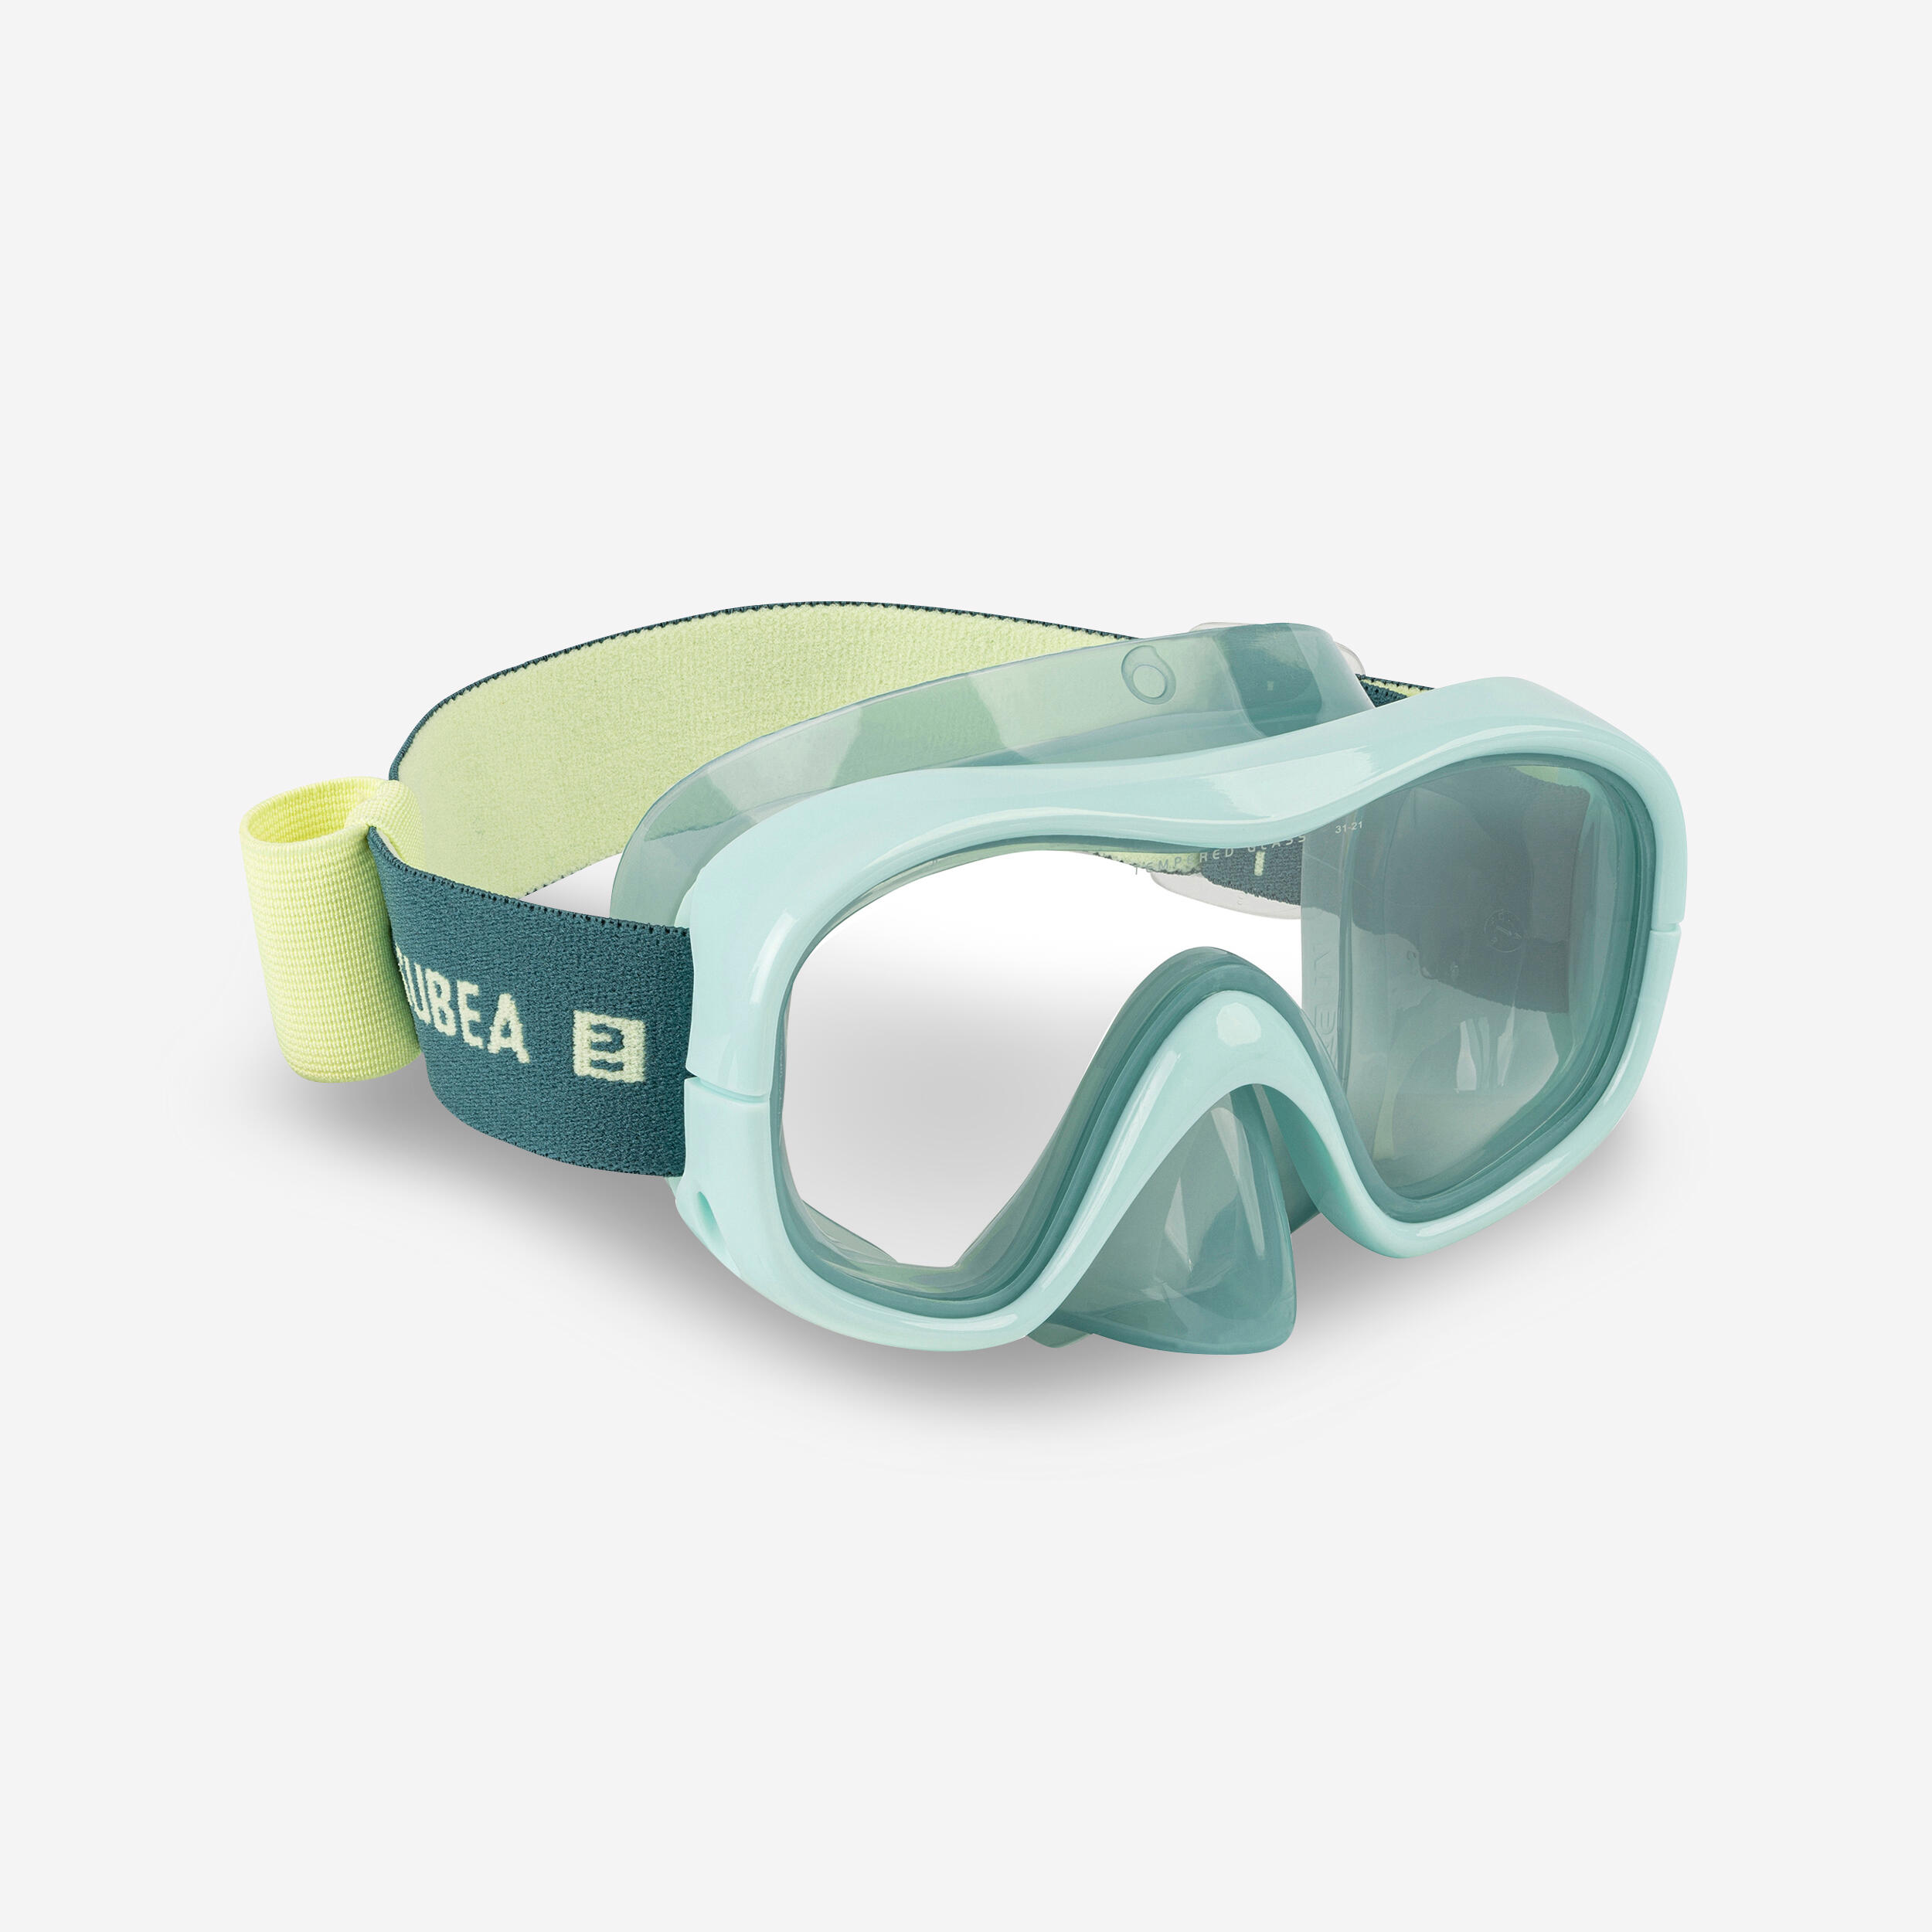 Erwachsene Schnorchelbrille Scuba Diving Schnorchel-Maske mit gehärtetem 